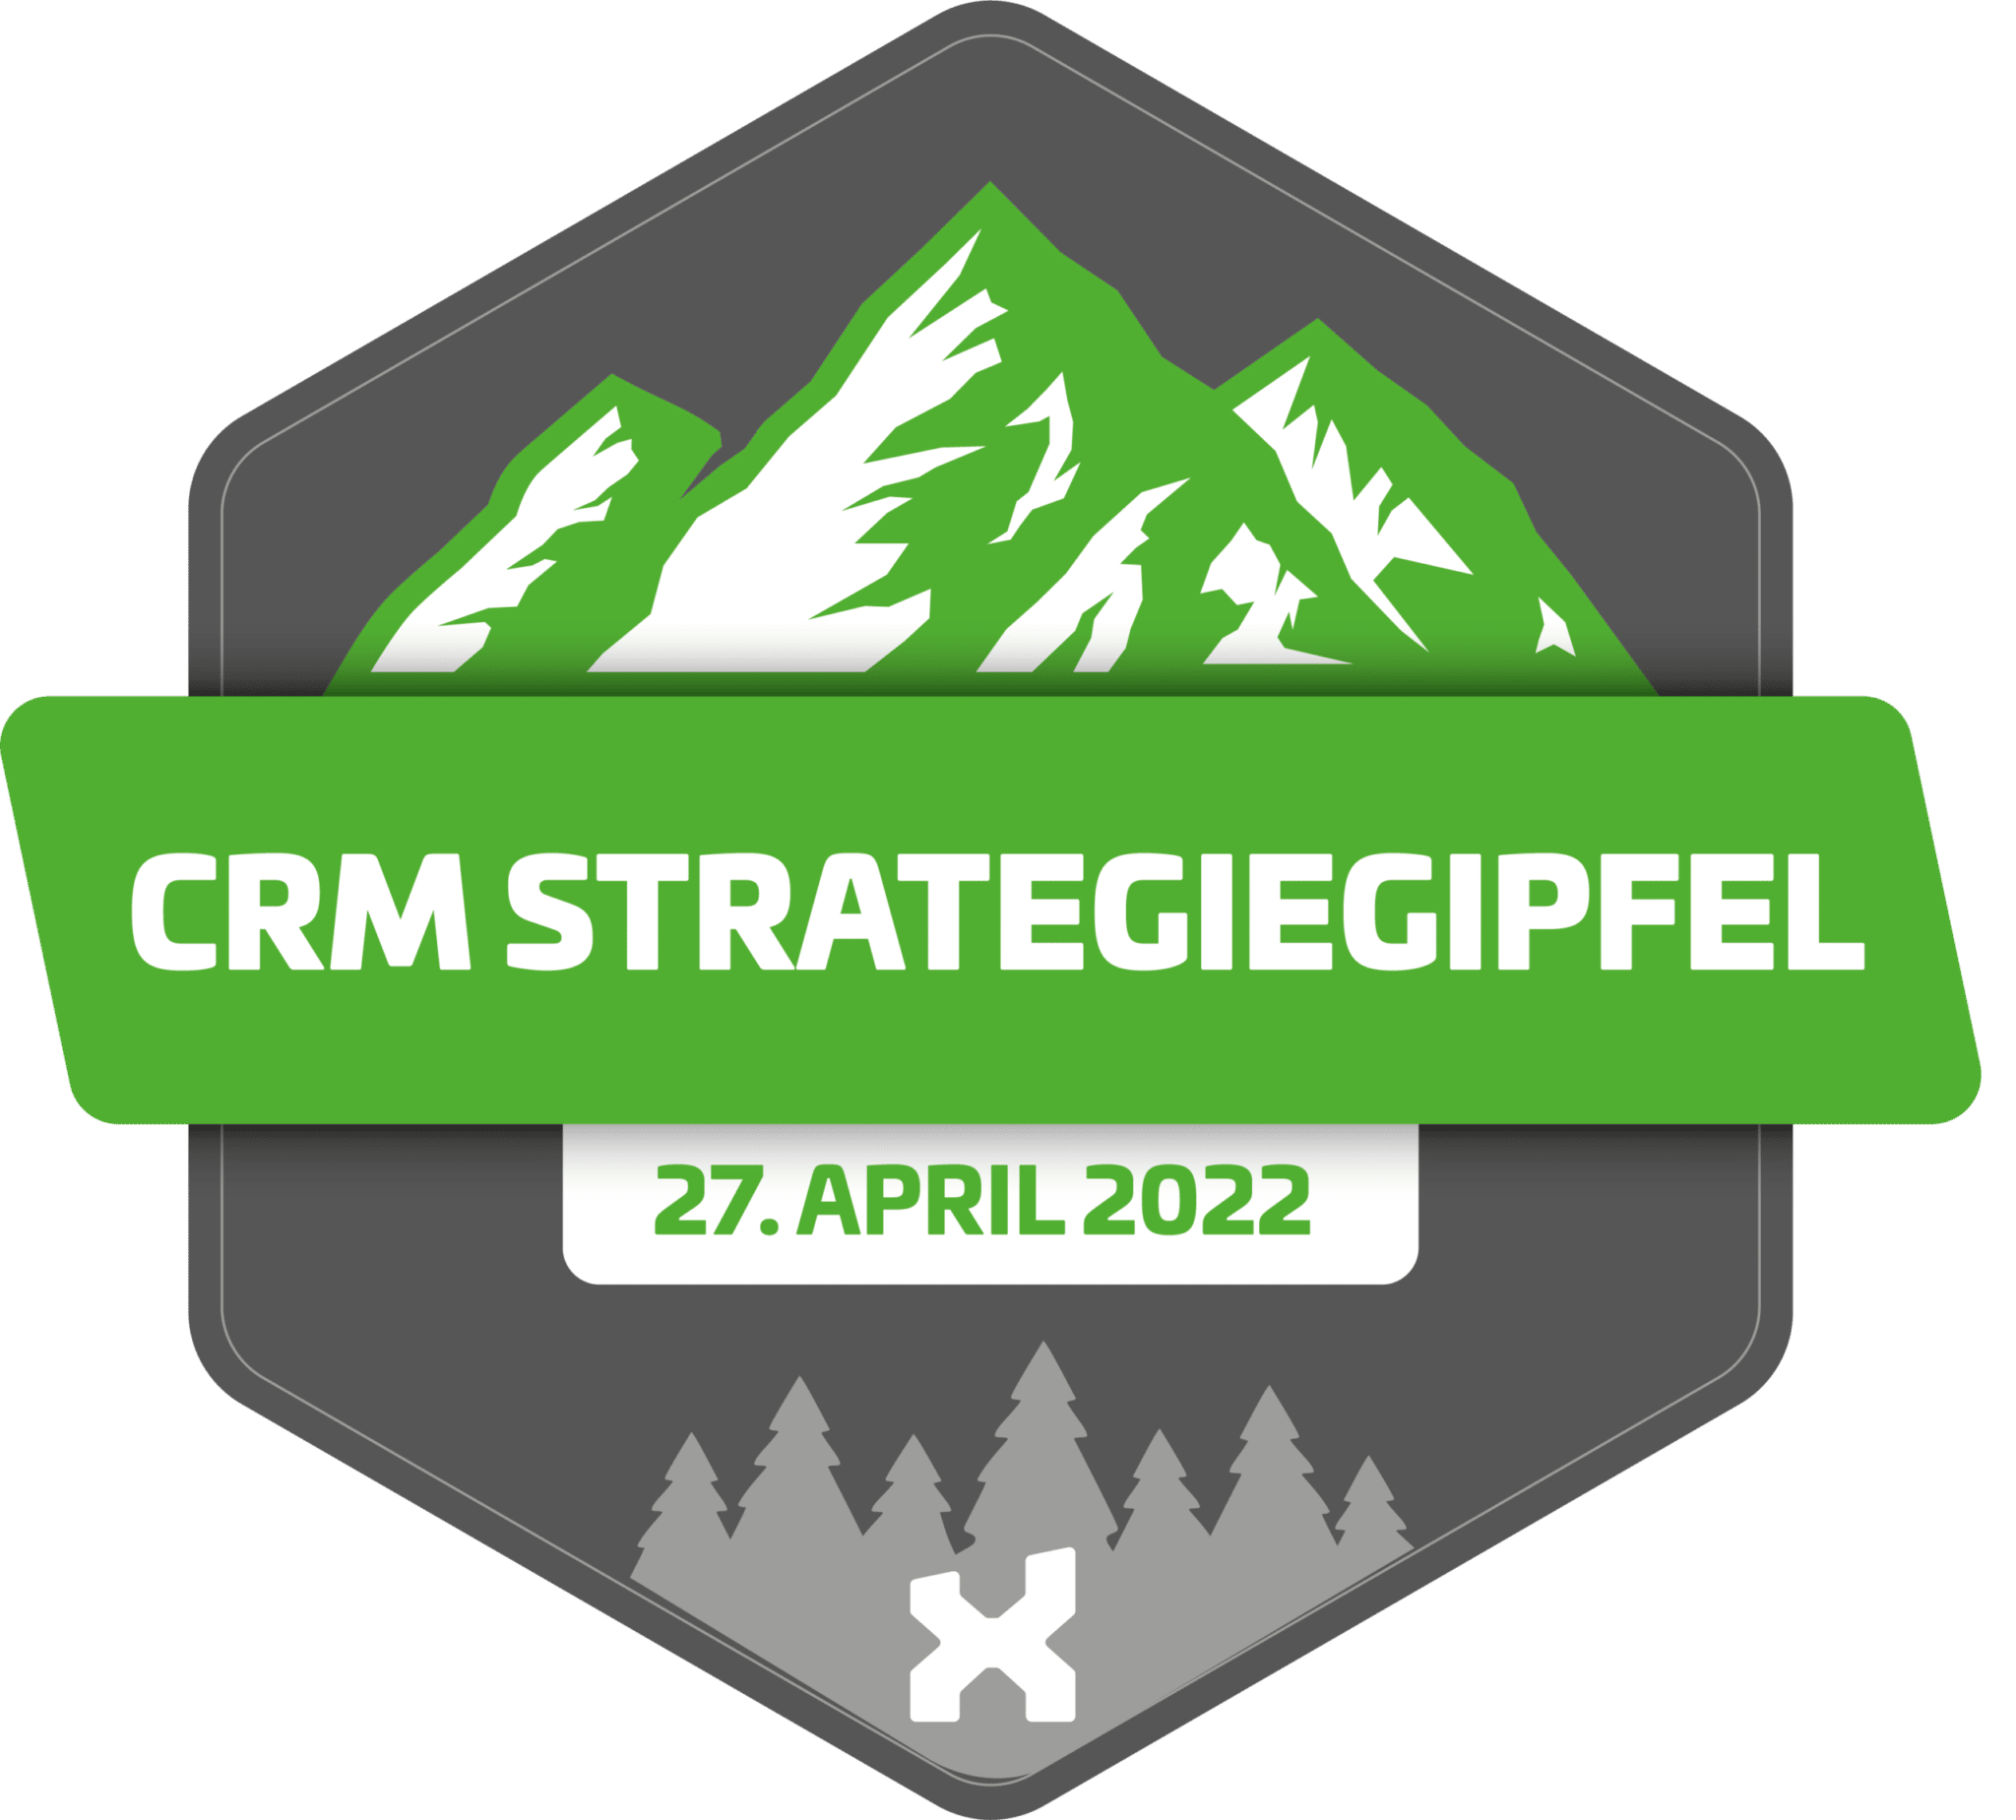 CRM Strategiegipfel Logo